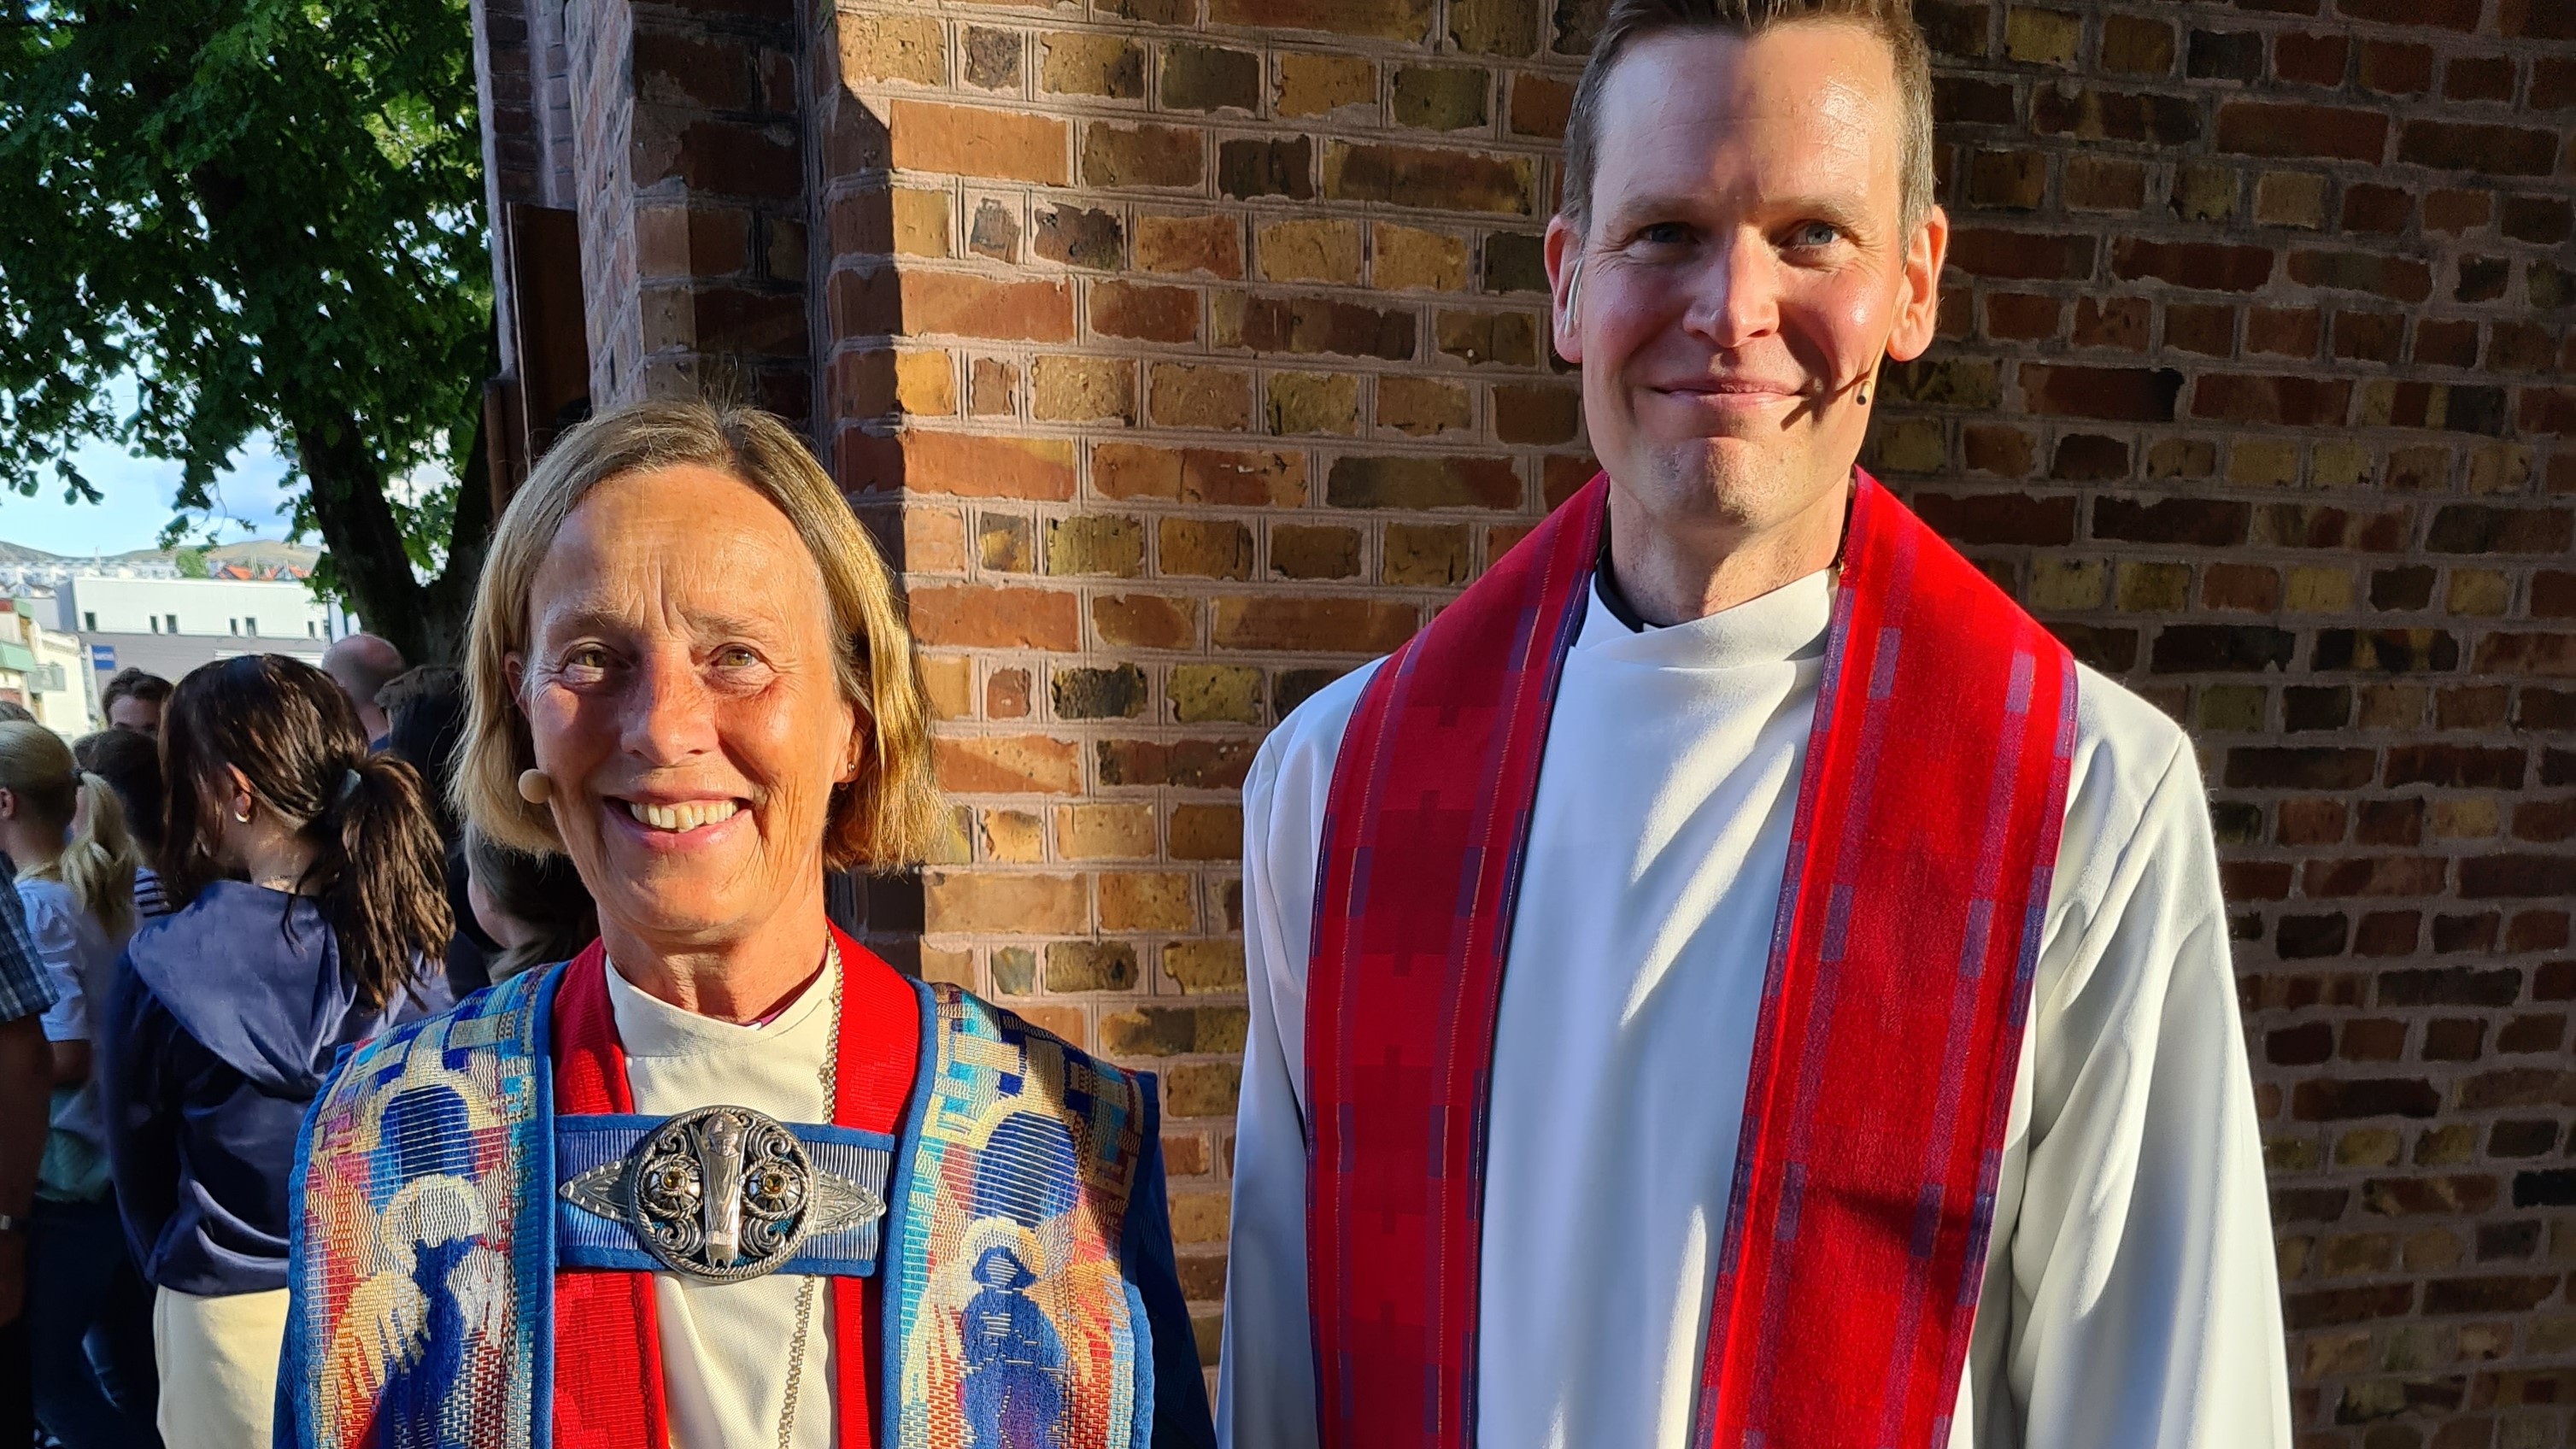 Biskop Anne Lise Ådnøy og Kristoffer Hodne Haugen utenfor Sandnes kirke etter ordinasjonen. Foto: Eivind Kråvik